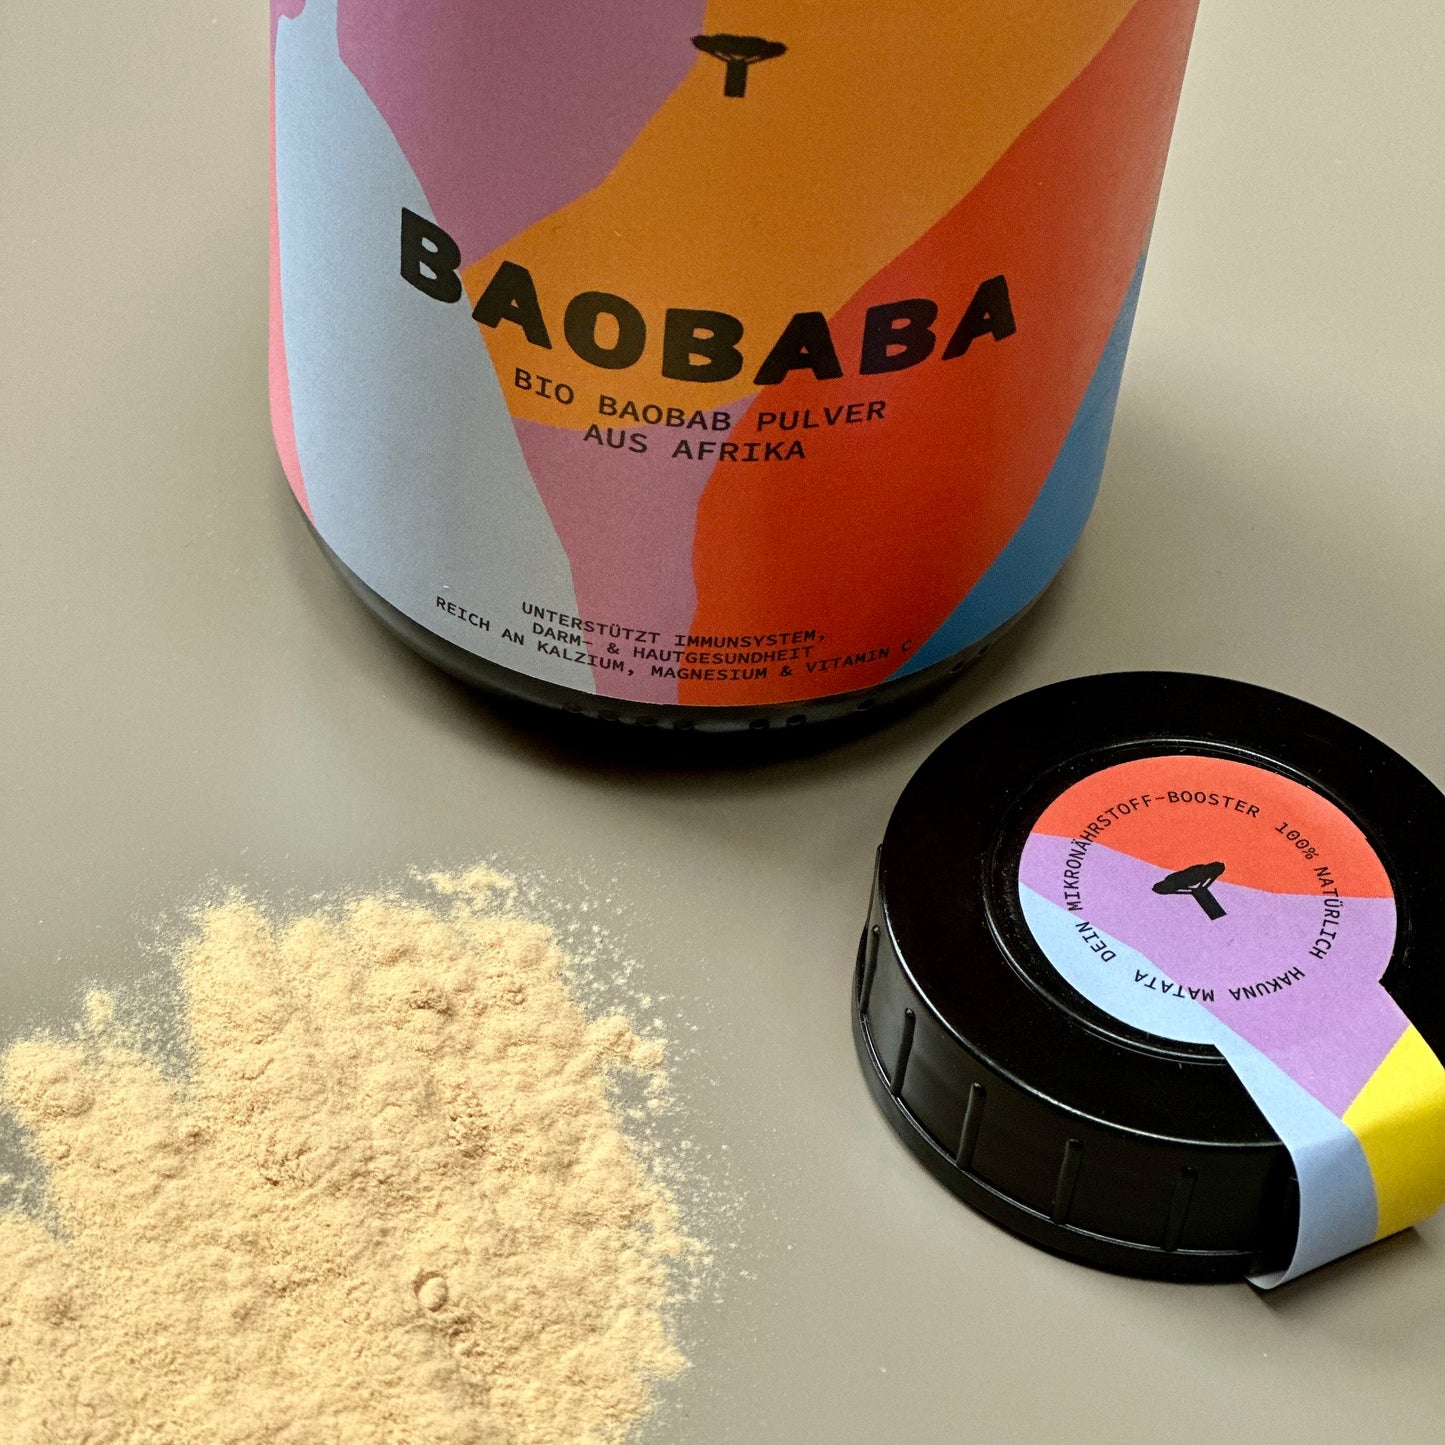 Bio Baobab Pulver aus Afrika 100% natürliches Fruchtpulver vom afrikanischen Affenbrotbaum